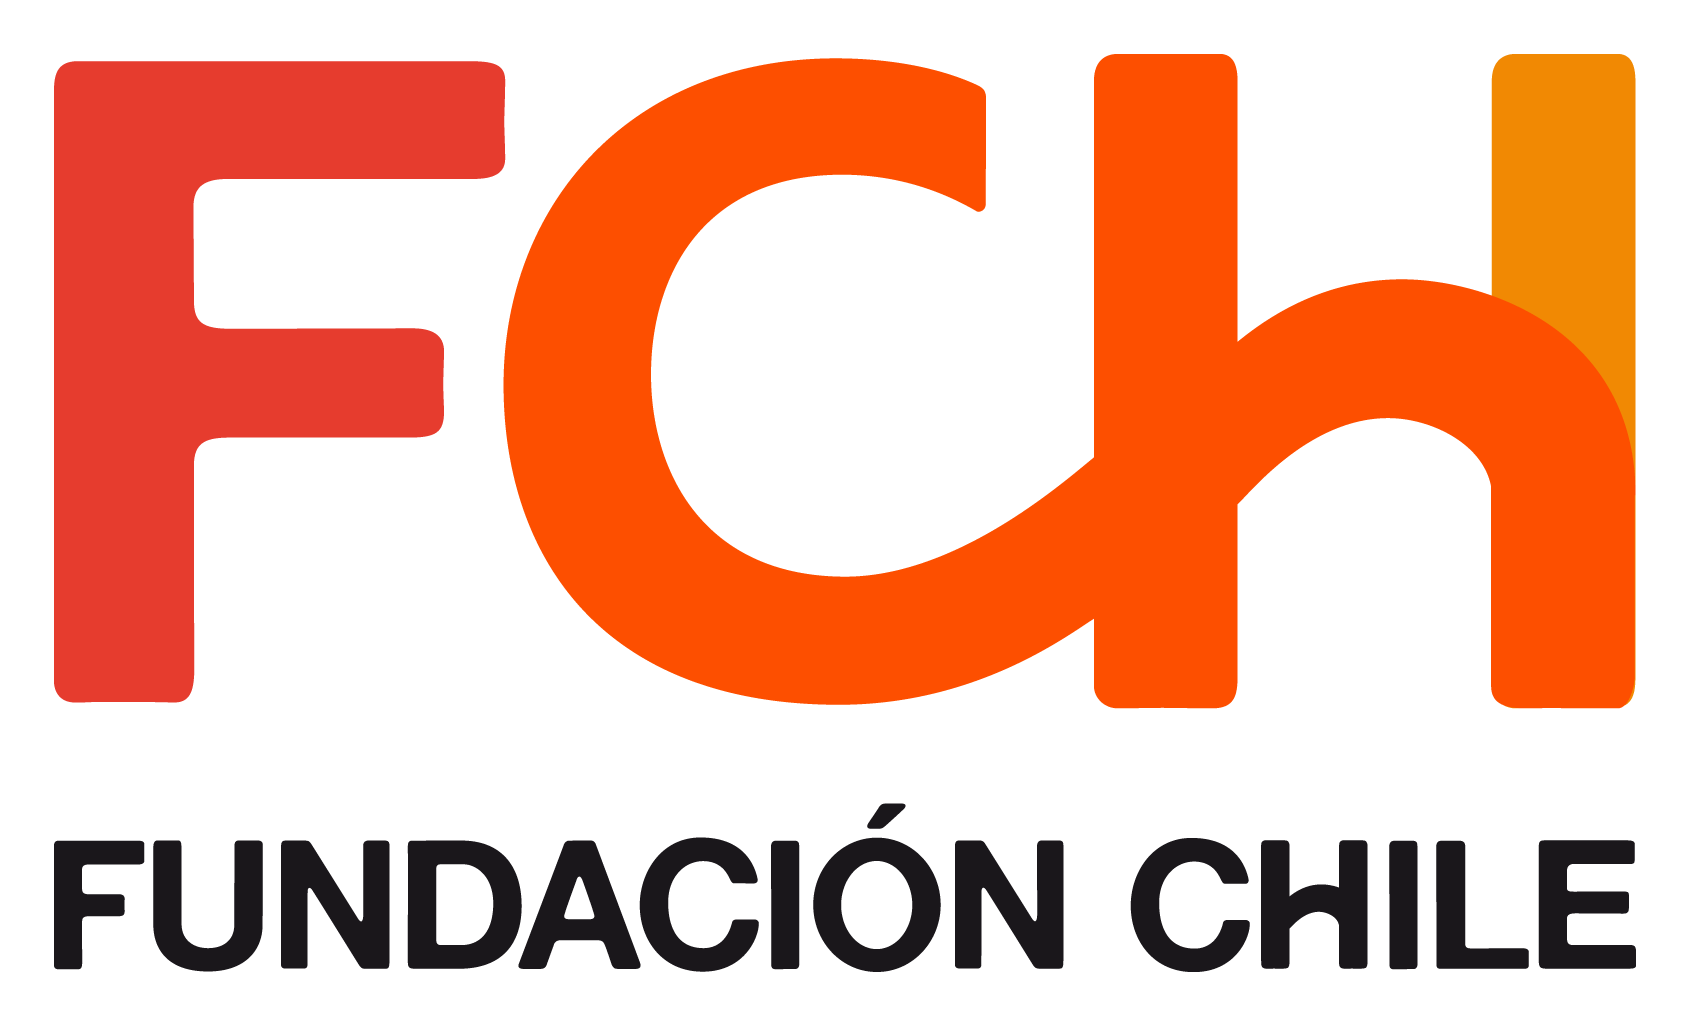 Fundacion Chile